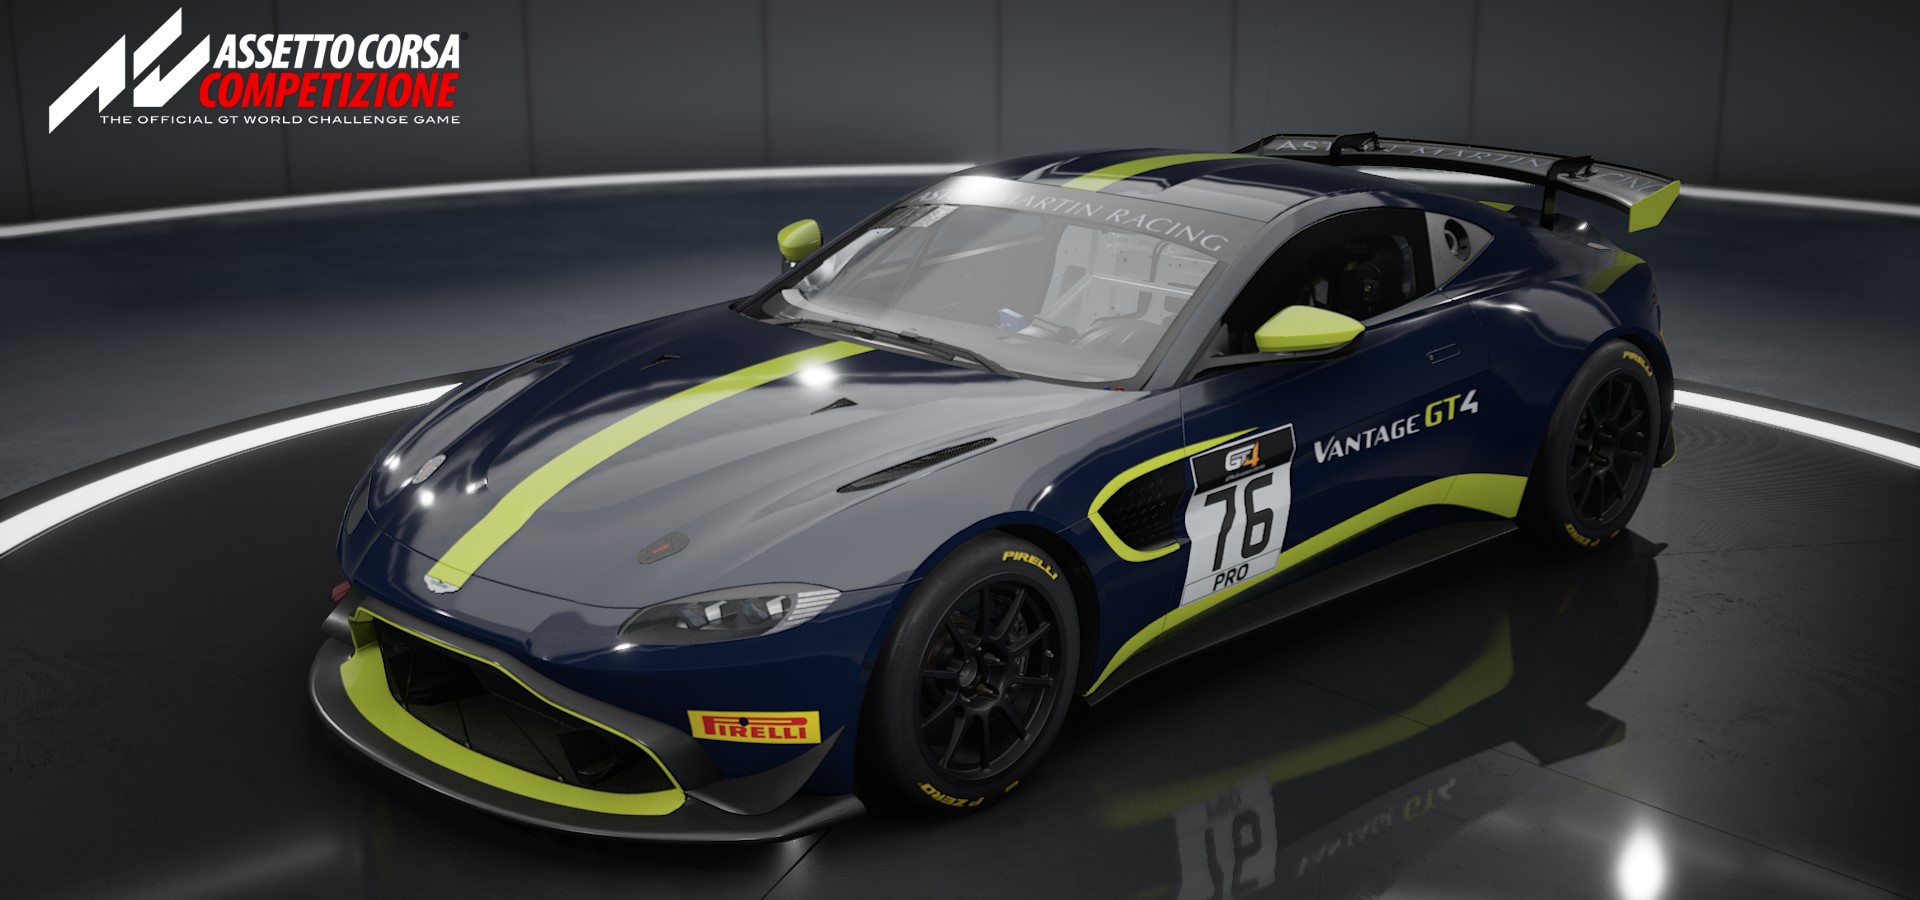 Aston Martin AMR V8 Vantage GT4 2018